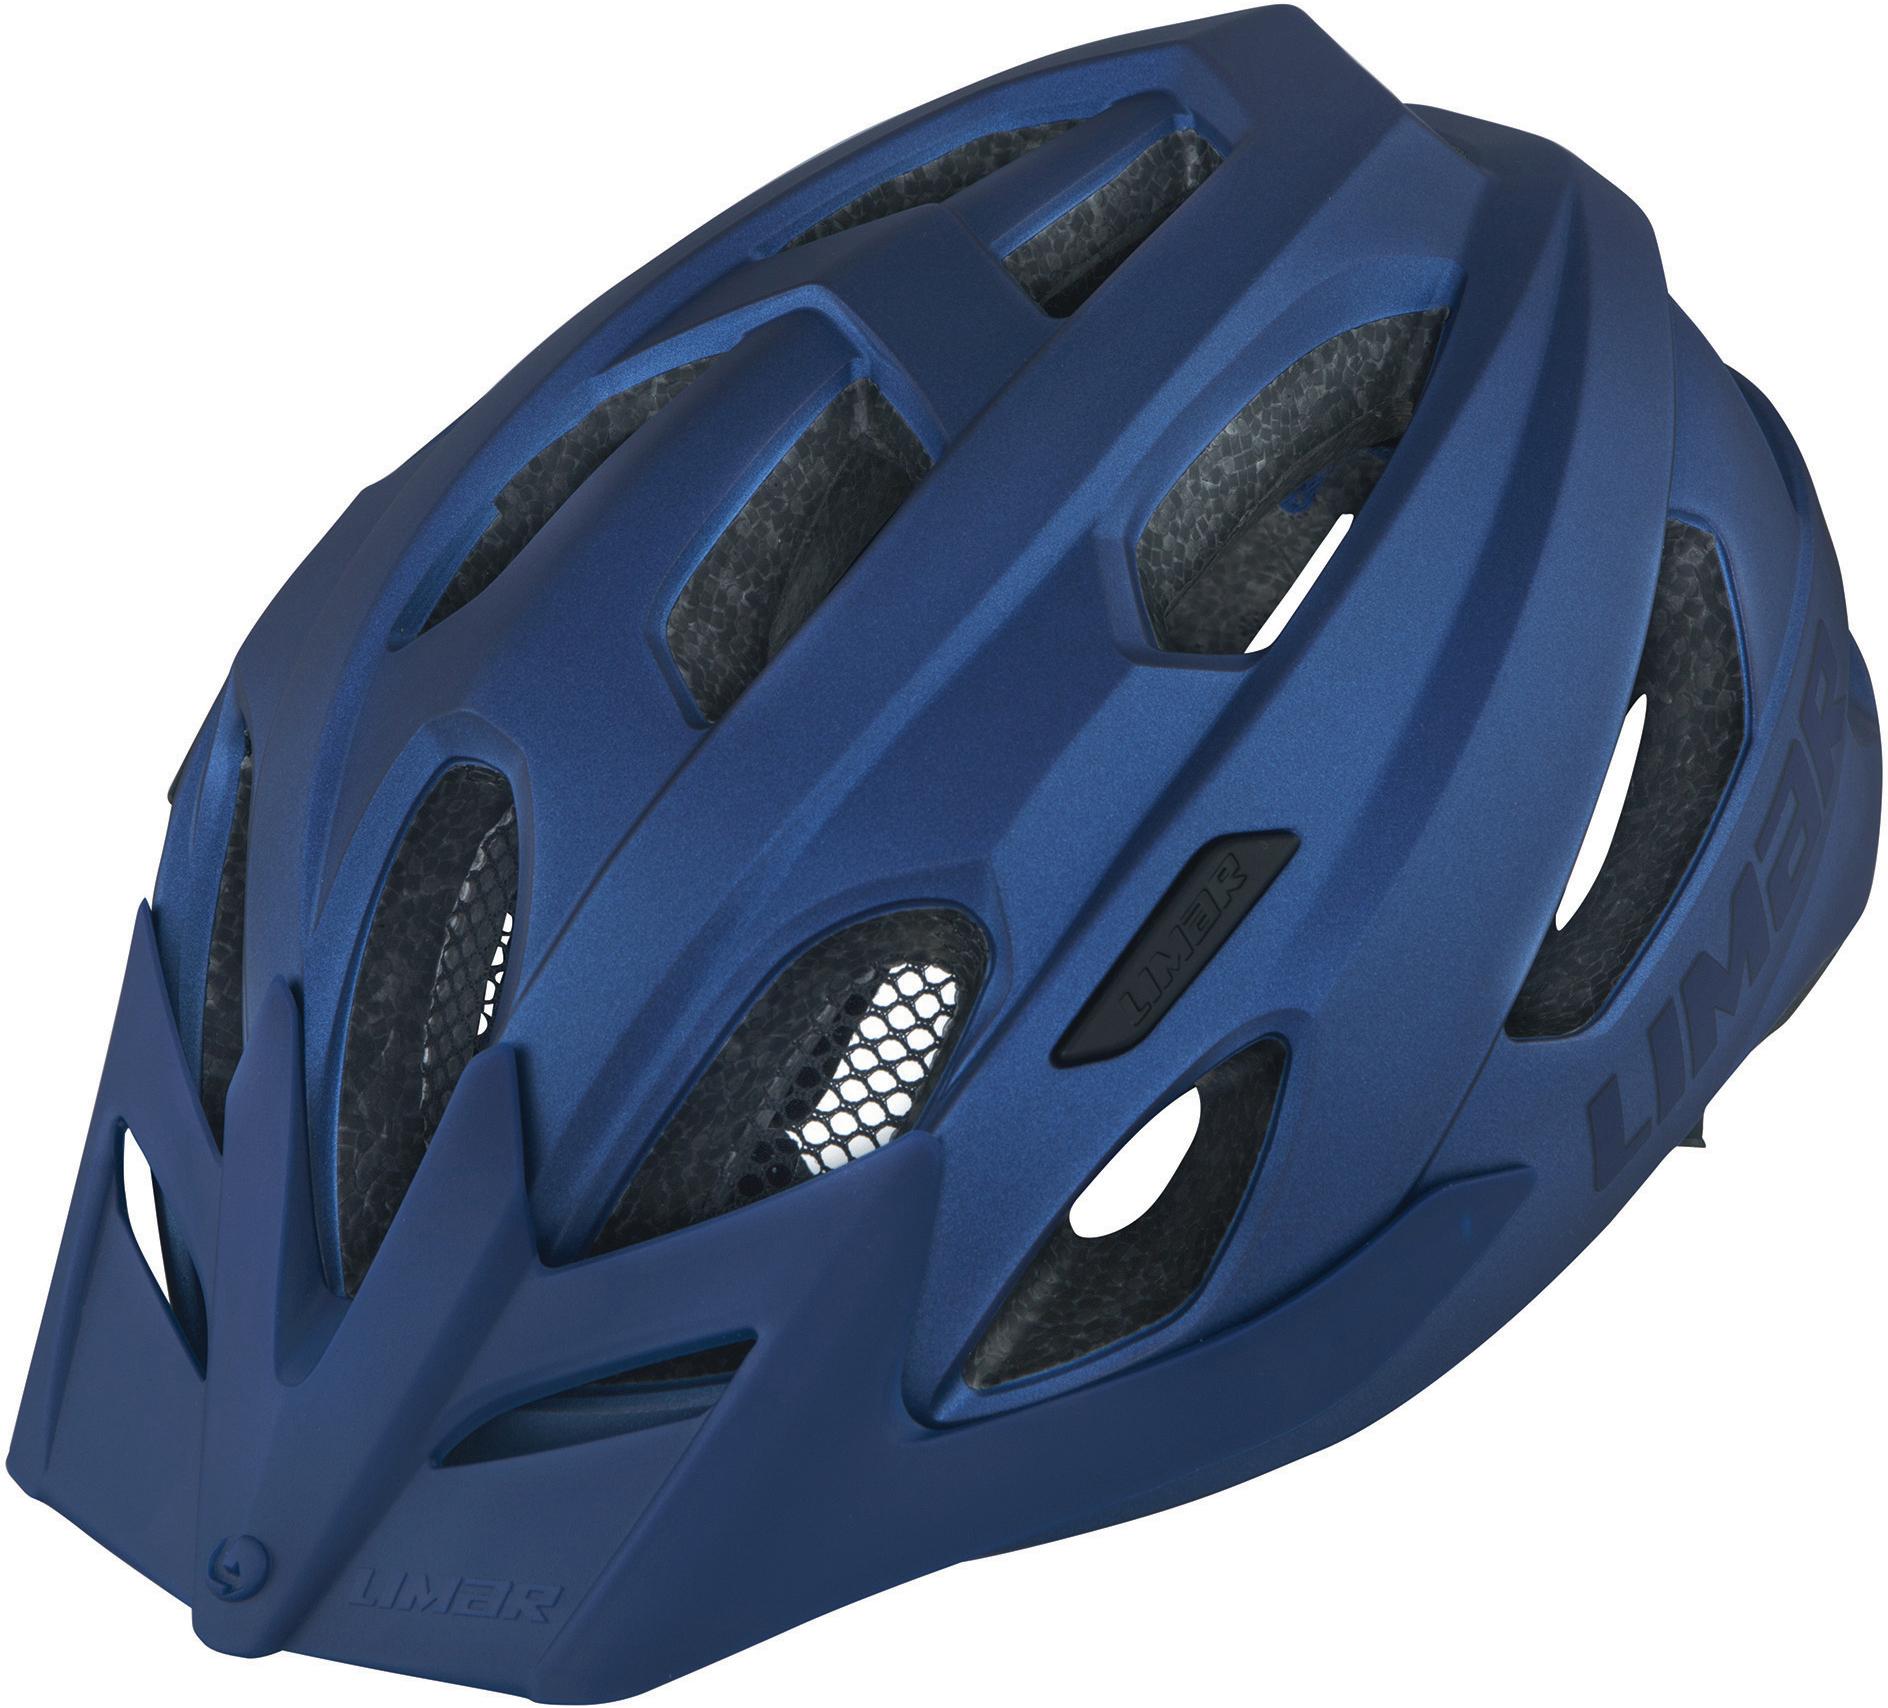 Limar Urbe Helmet - Lead Blue - Medium